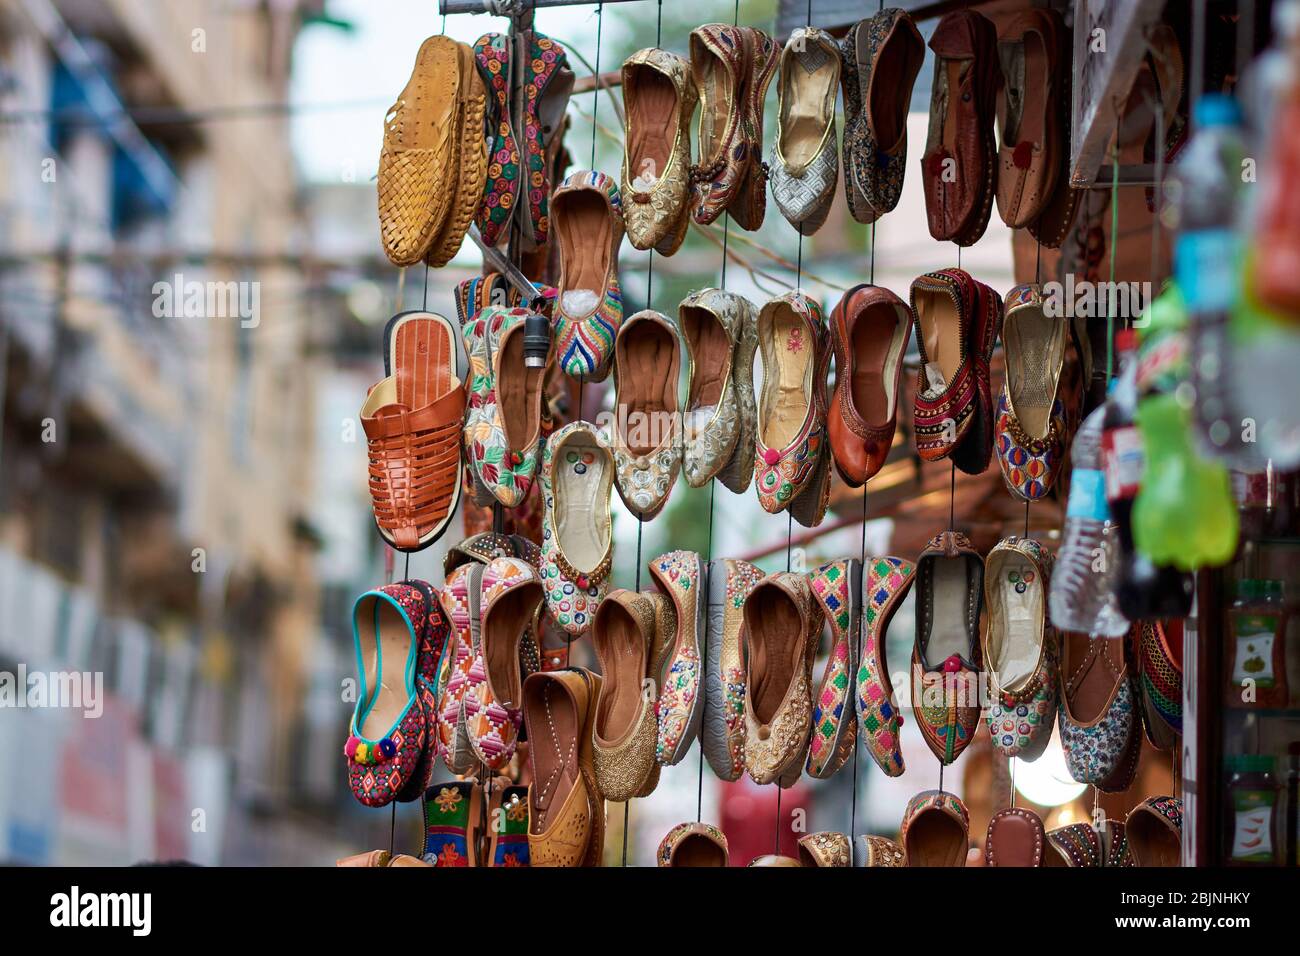 Traditionelle indische Schuhe bei Bapu Bazar in Jaipur, Indien. Bapu Bazar in Jaipur ist einer der berühmtesten Märkte der Stadt für den Kauf von traditionellen Ind Stockfoto